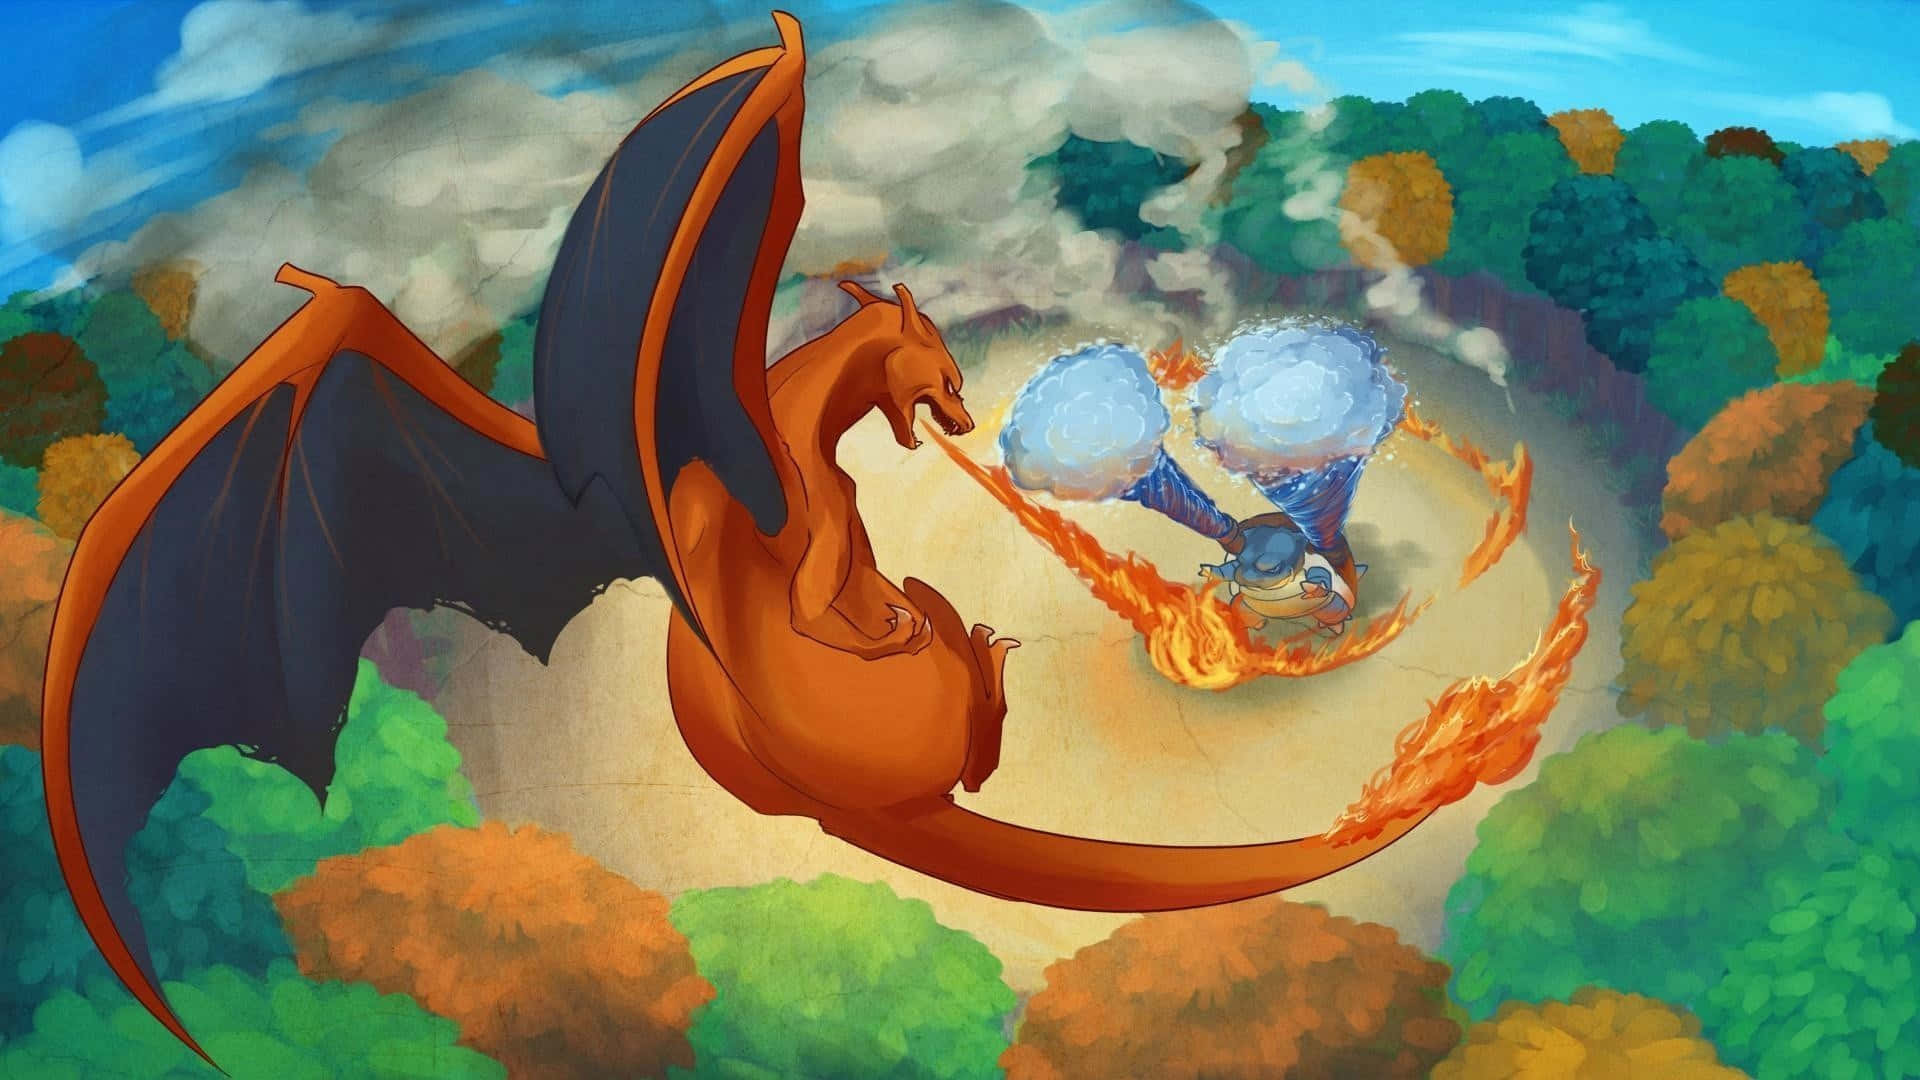 Charizardär En Häftig Pokemon Av Fire- Och Flying-typ, Perfekt Att Ha Som Bakgrundsbild På Datorn Eller Mobilen. Wallpaper